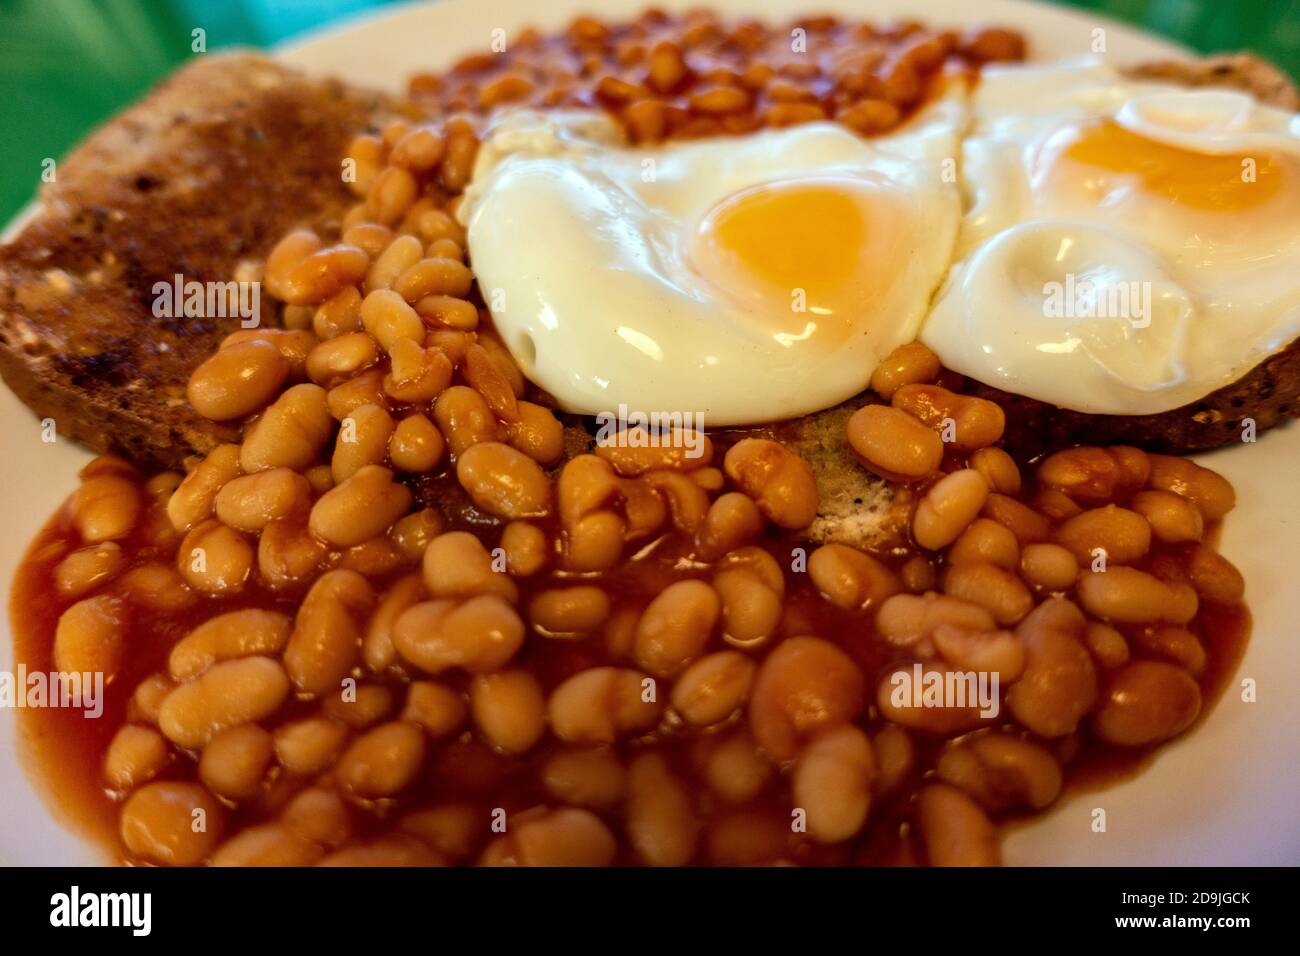 Colazione all'inglese: Uova e fagioli sul pane tostato Foto Stock